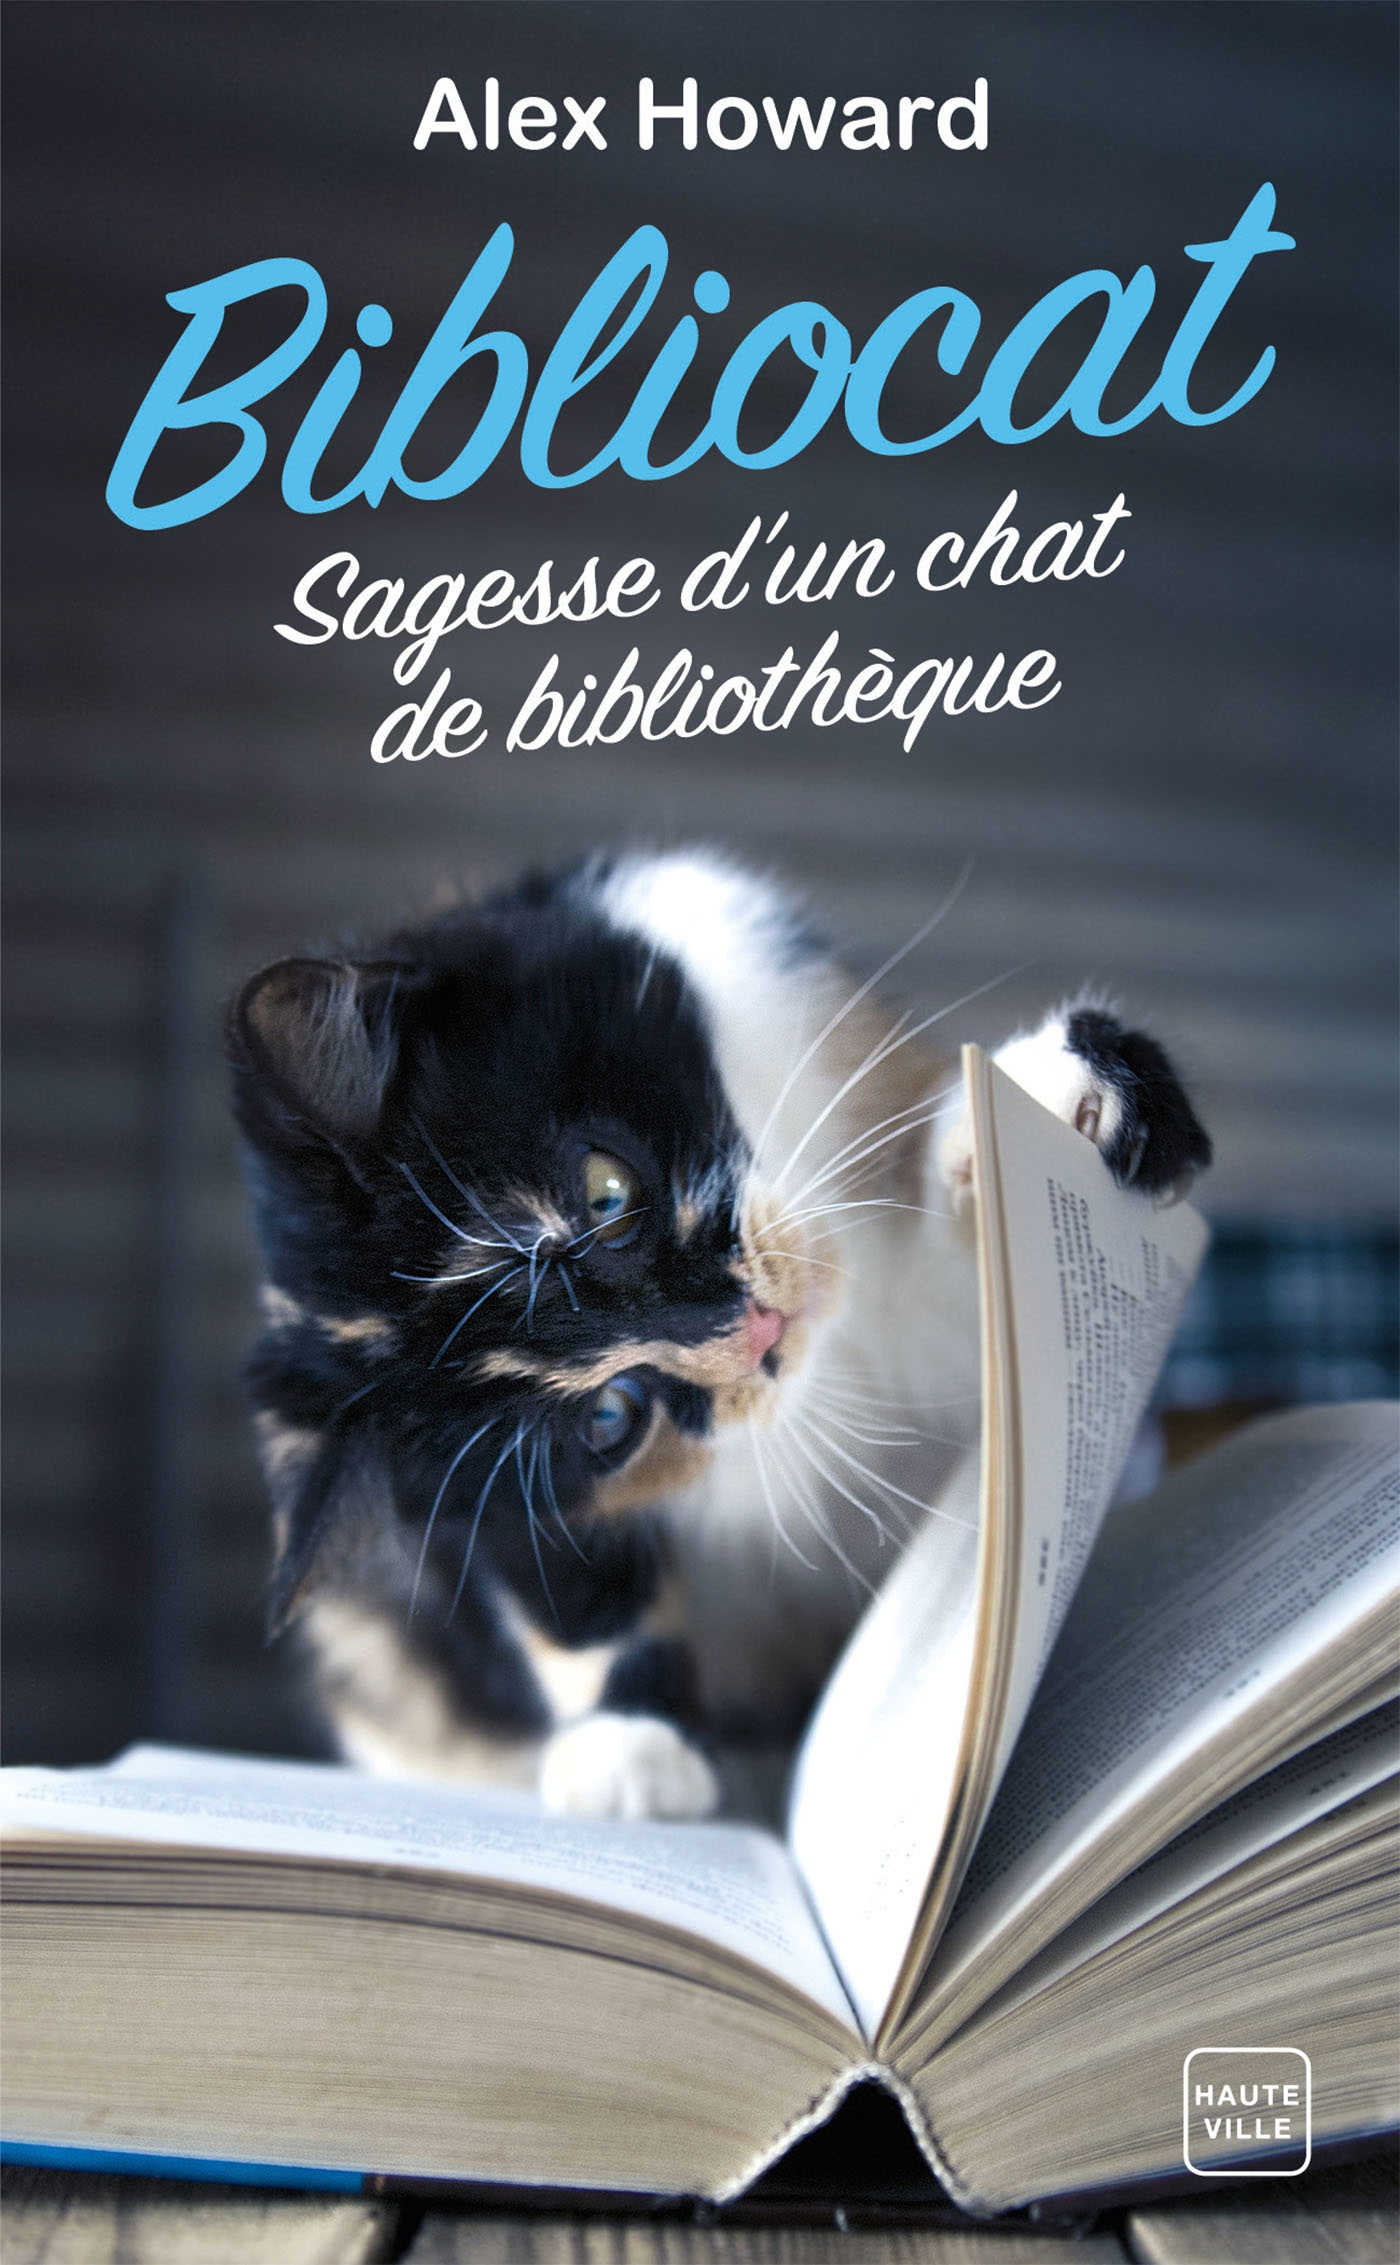 Afficher "Bibliocat : Sagesse d’un chat de bibliothèque"